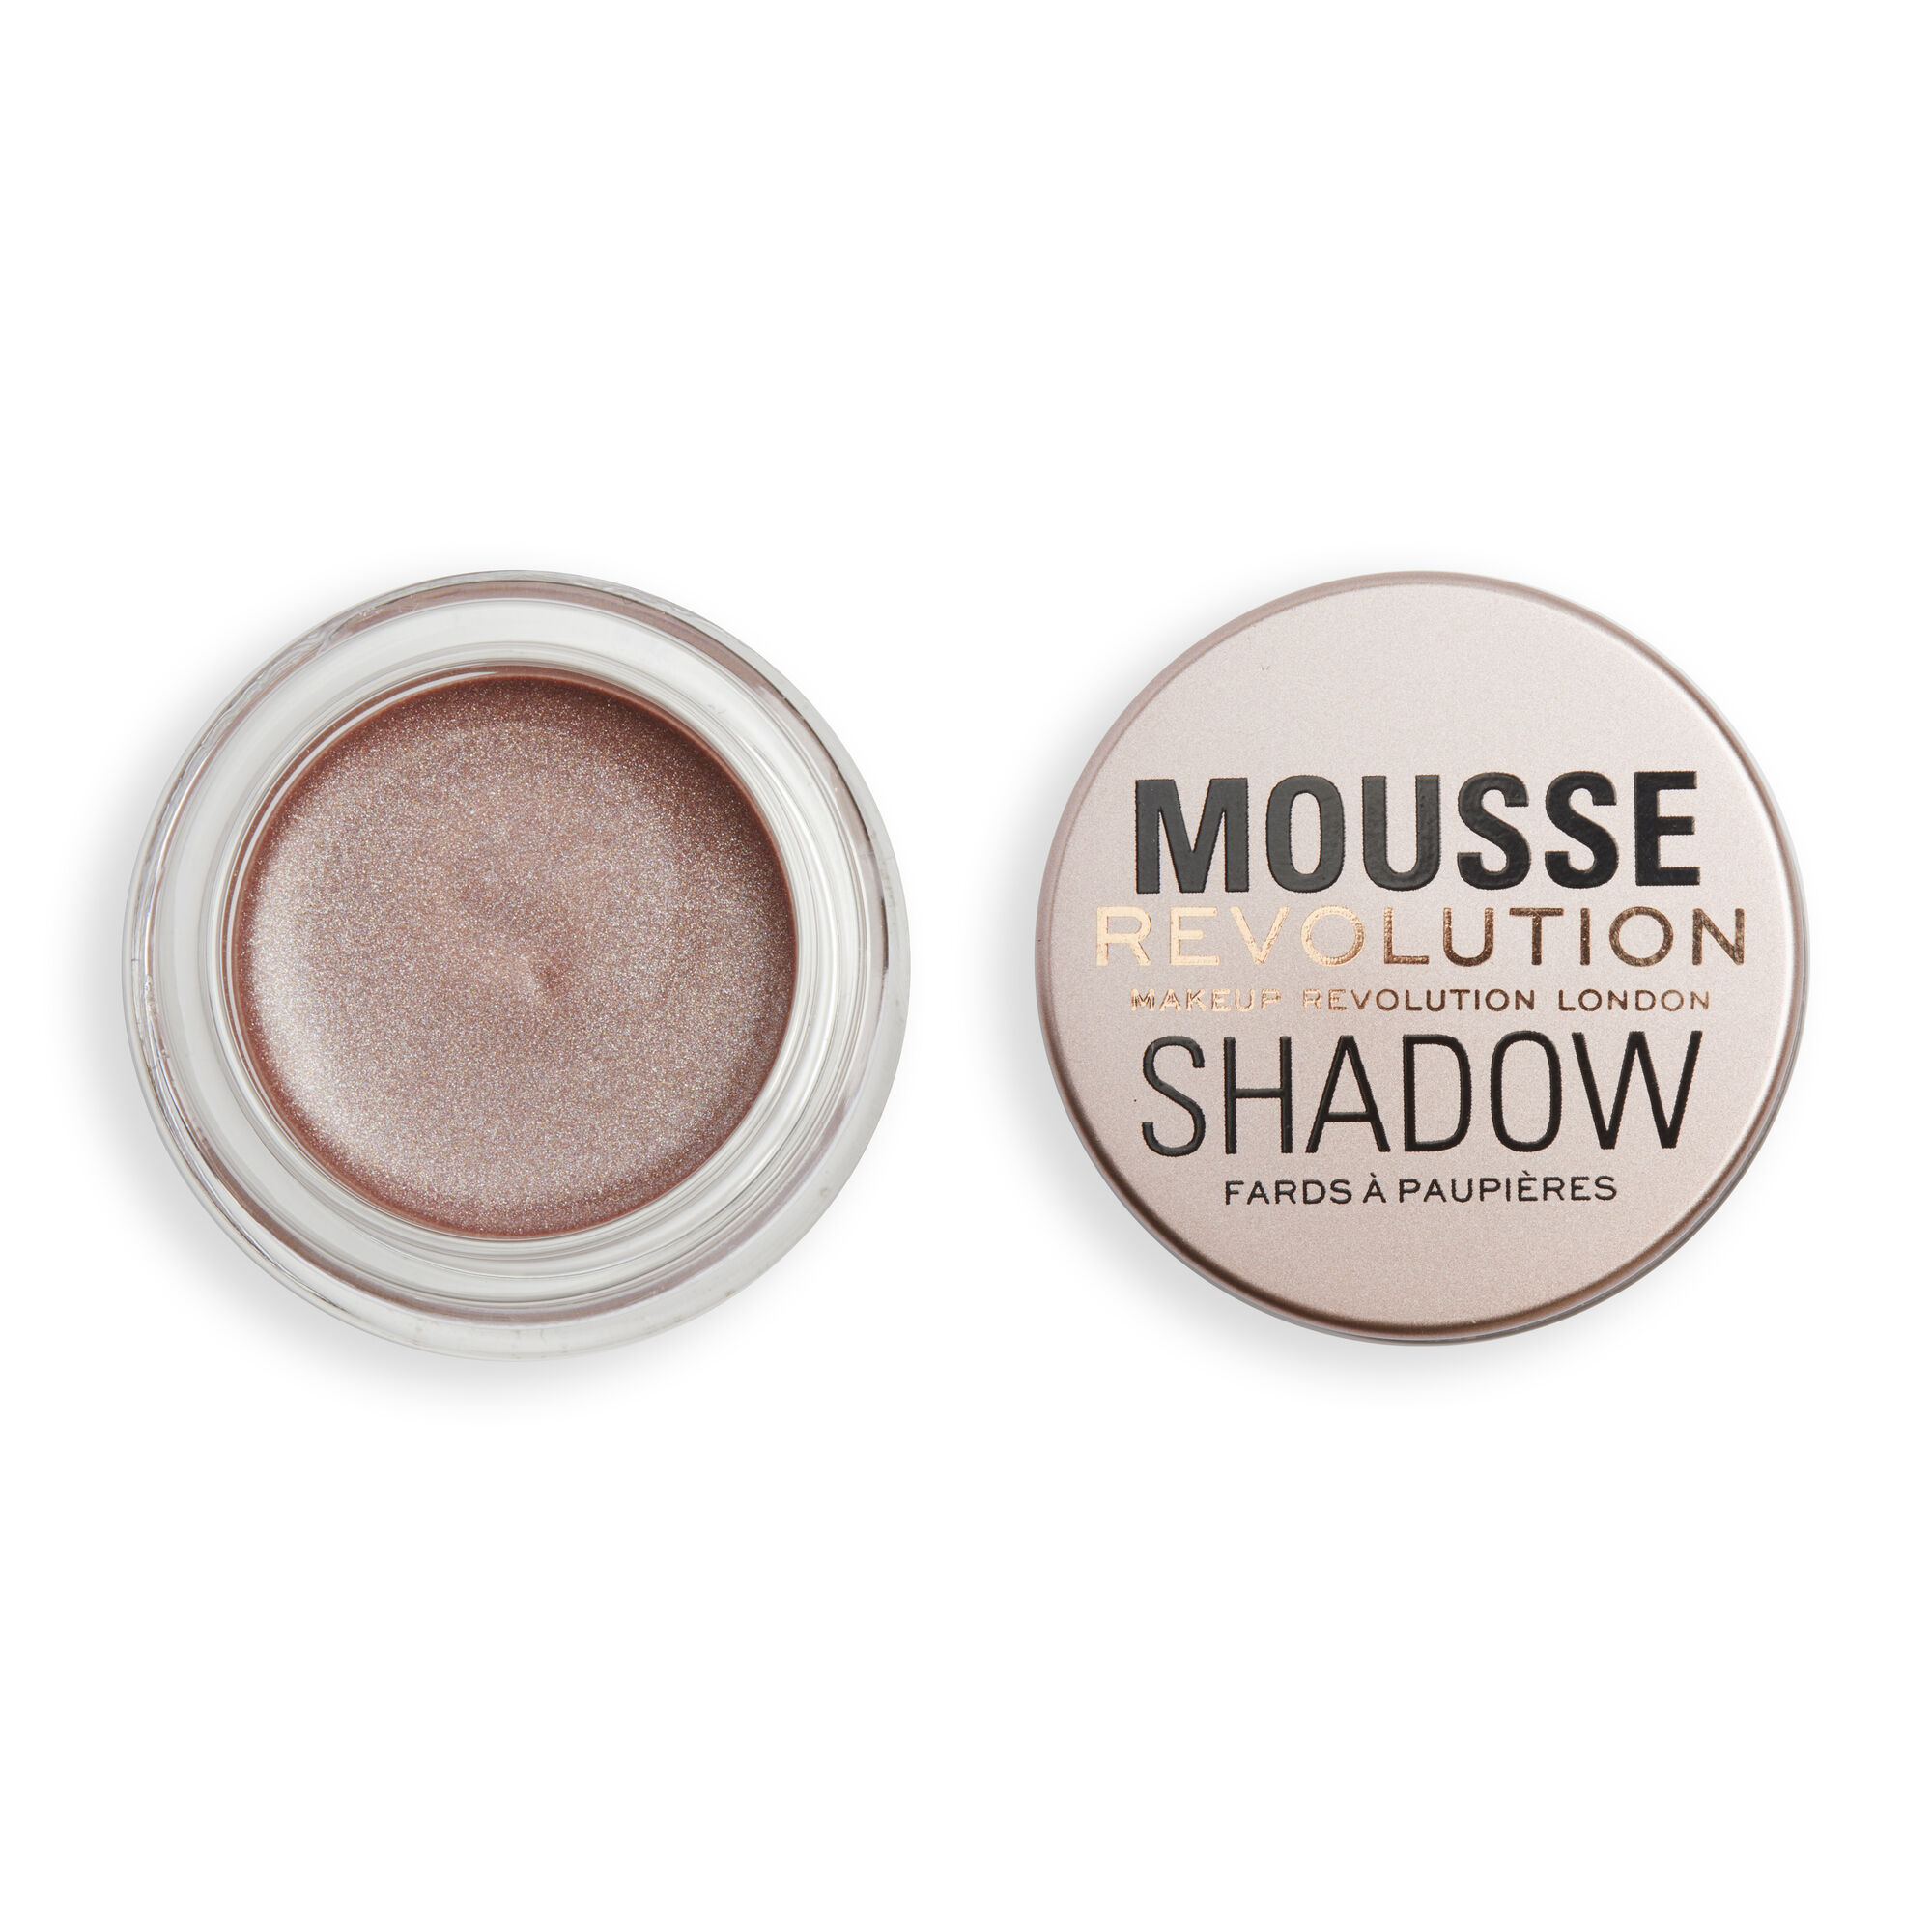 Тени Revolution Makeup кремовые для век Mousse Cream Eyeshadow Rose Gold lasting mousse eyeshadow стойкие муссовые тени для век